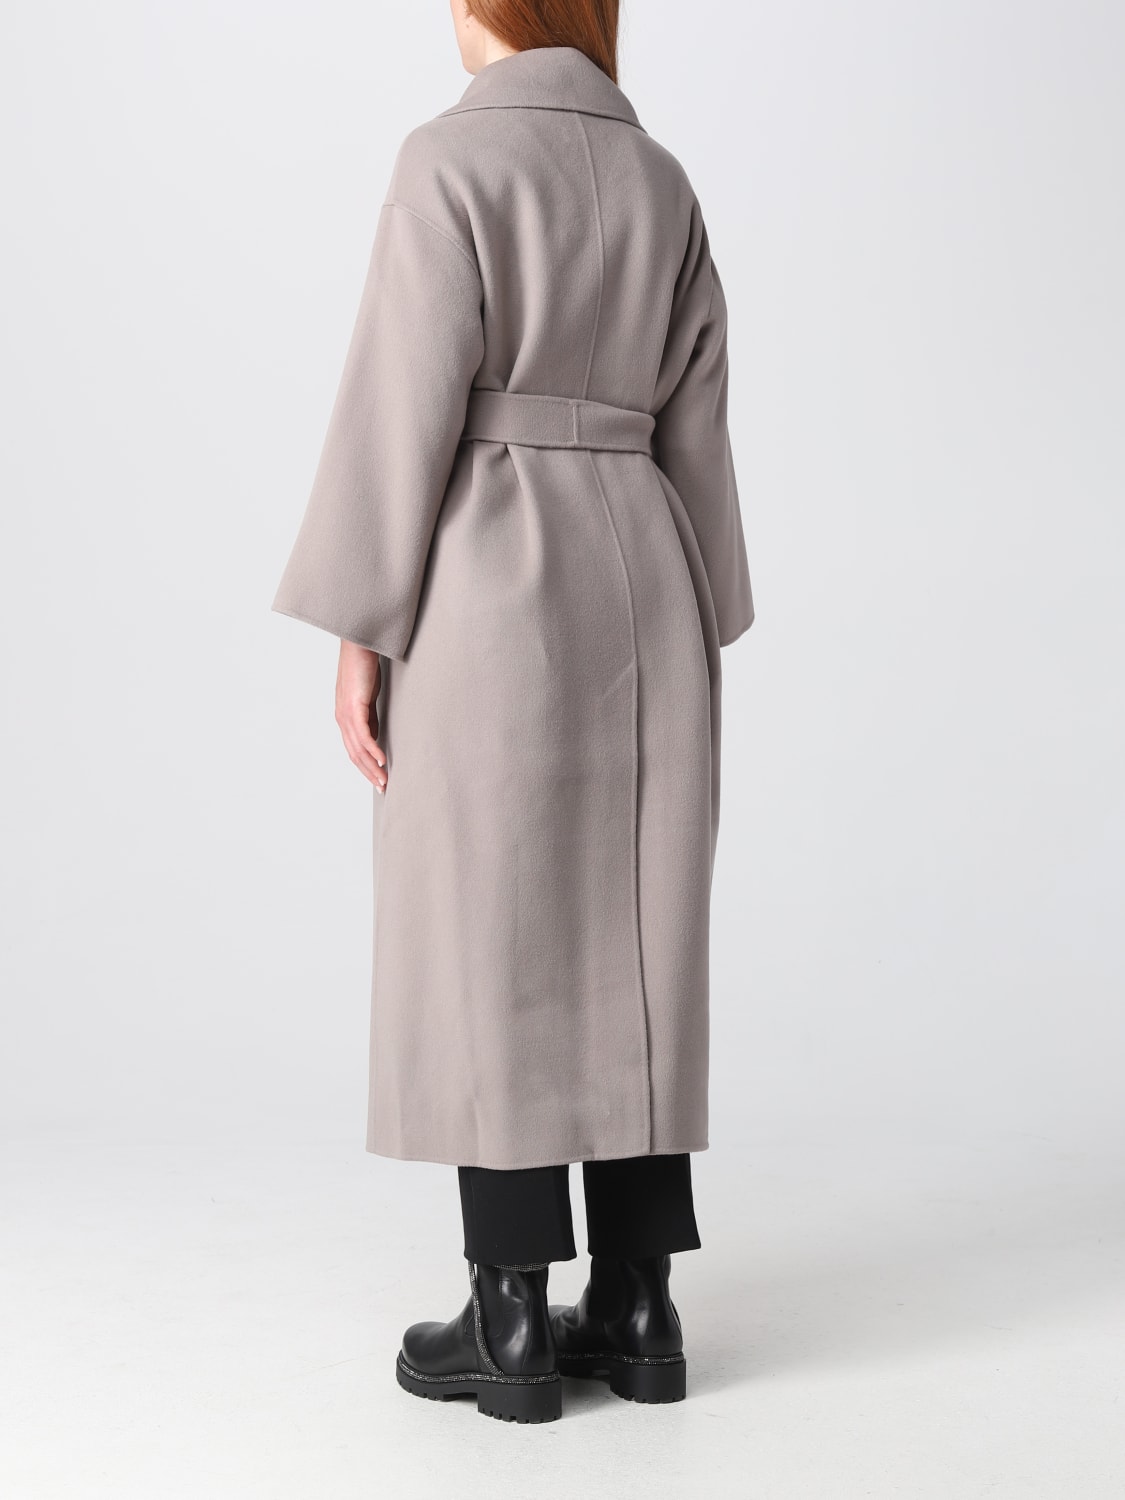 S MAX MARA: Venice coat in wool - Grey | S Max Mara coat 2390161039600 ...